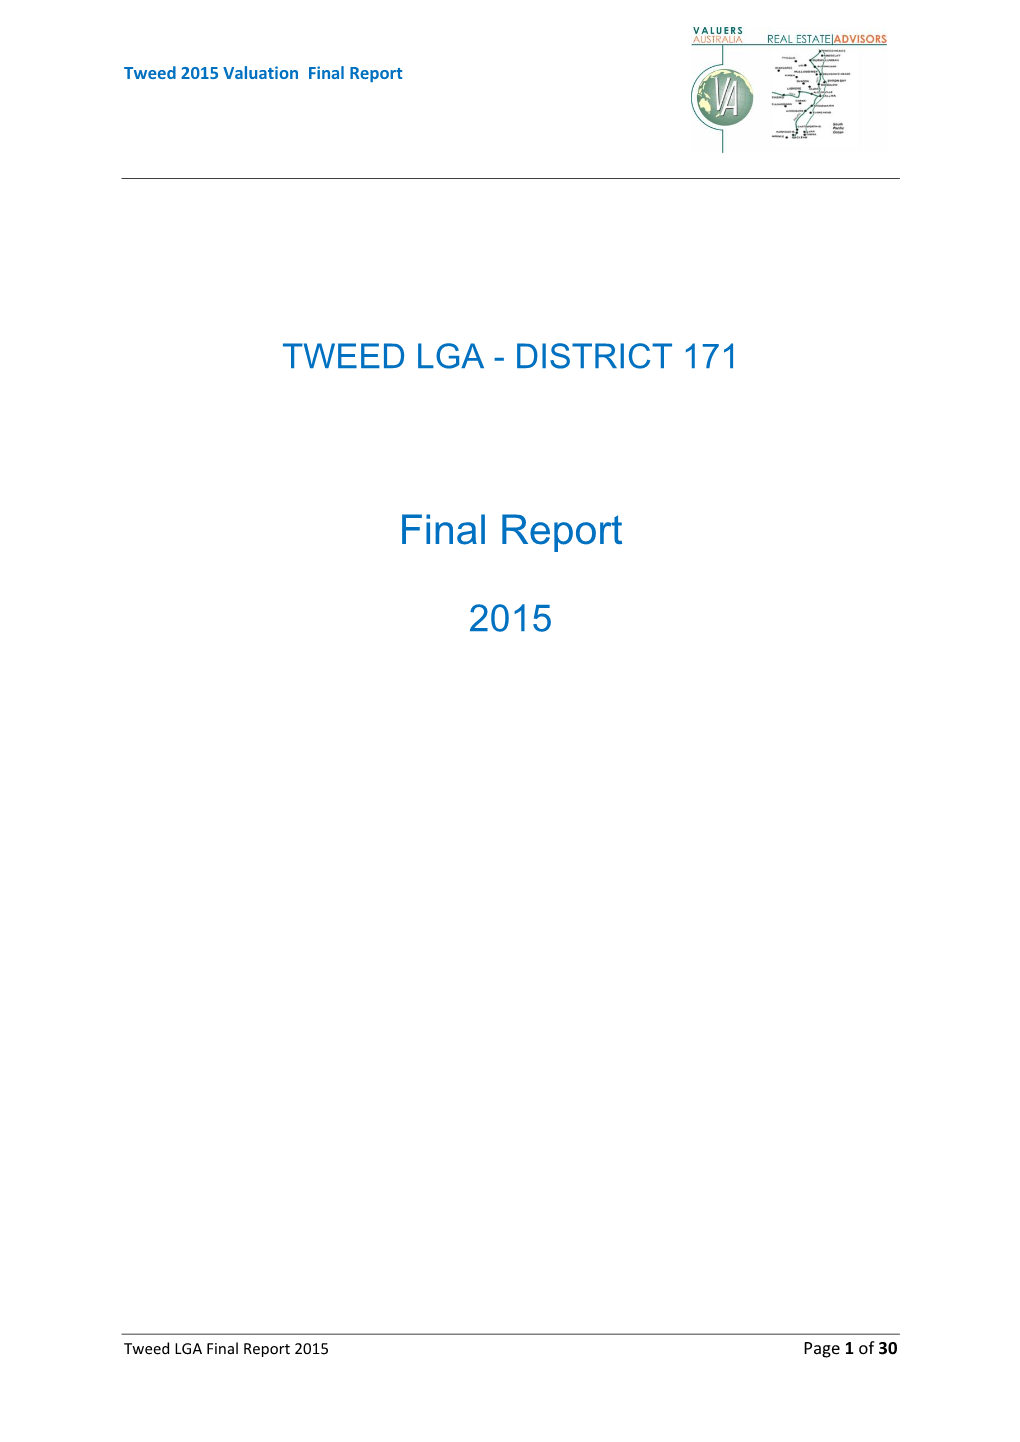 Tweed Final Report 2015